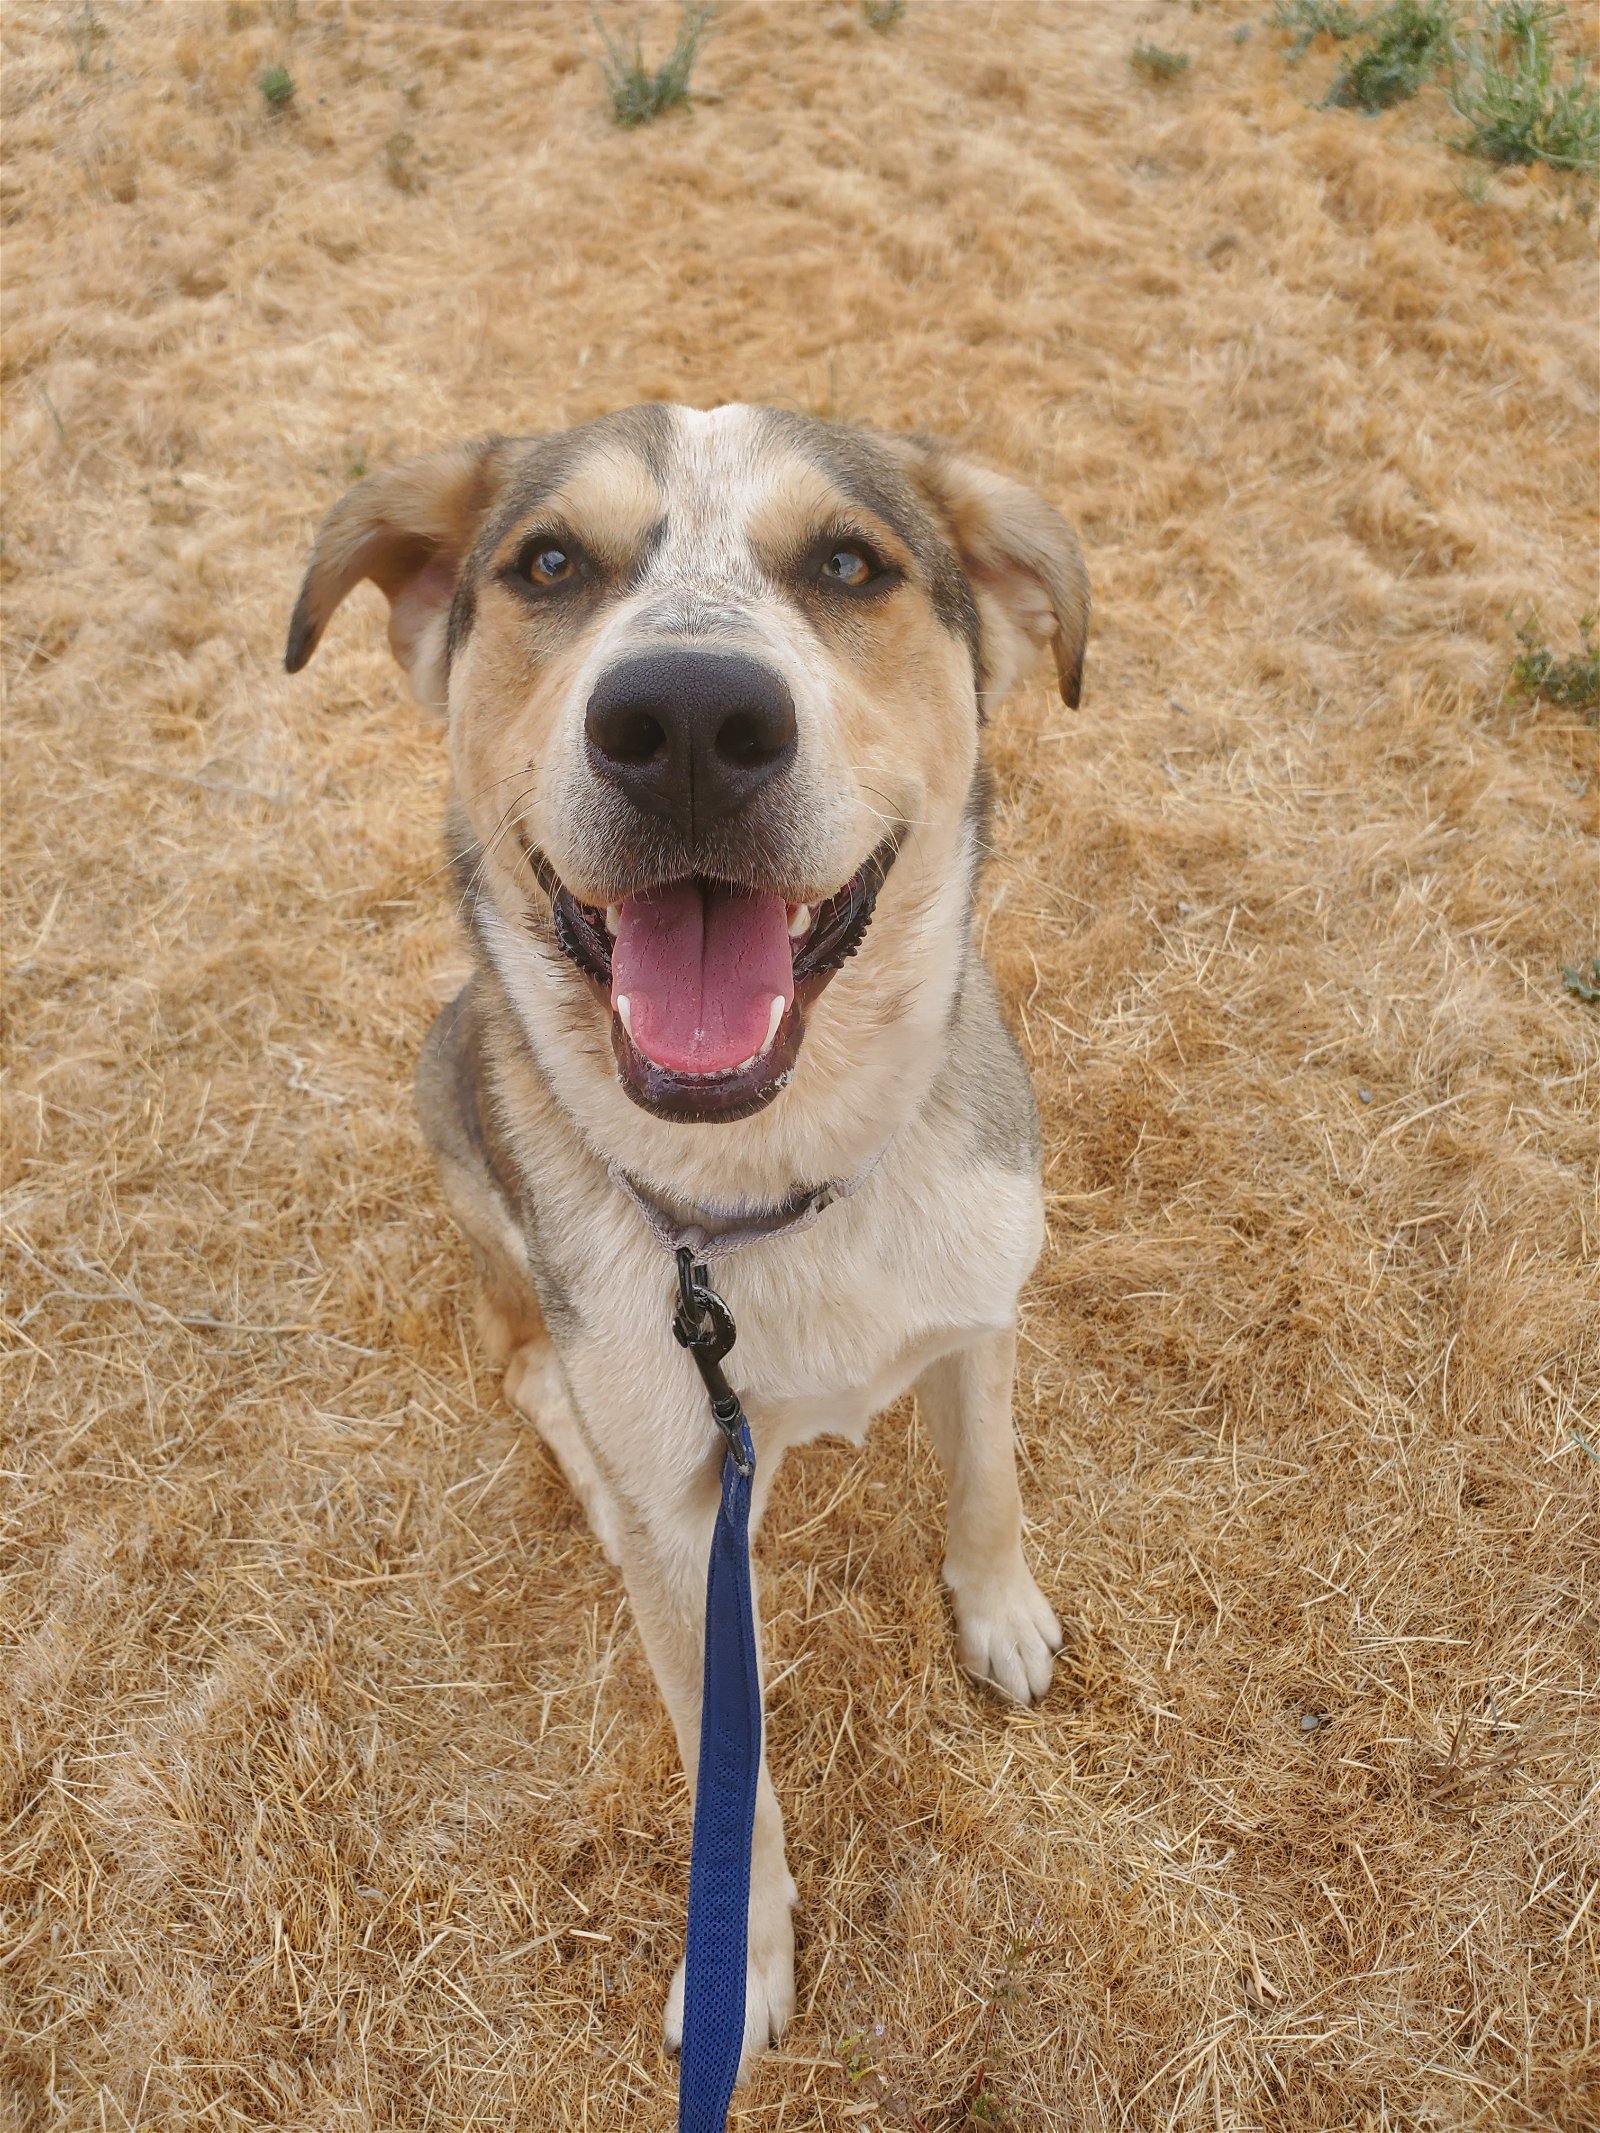 Thimble, an adoptable Labrador Retriever in Yreka, CA, 96097 | Photo Image 2